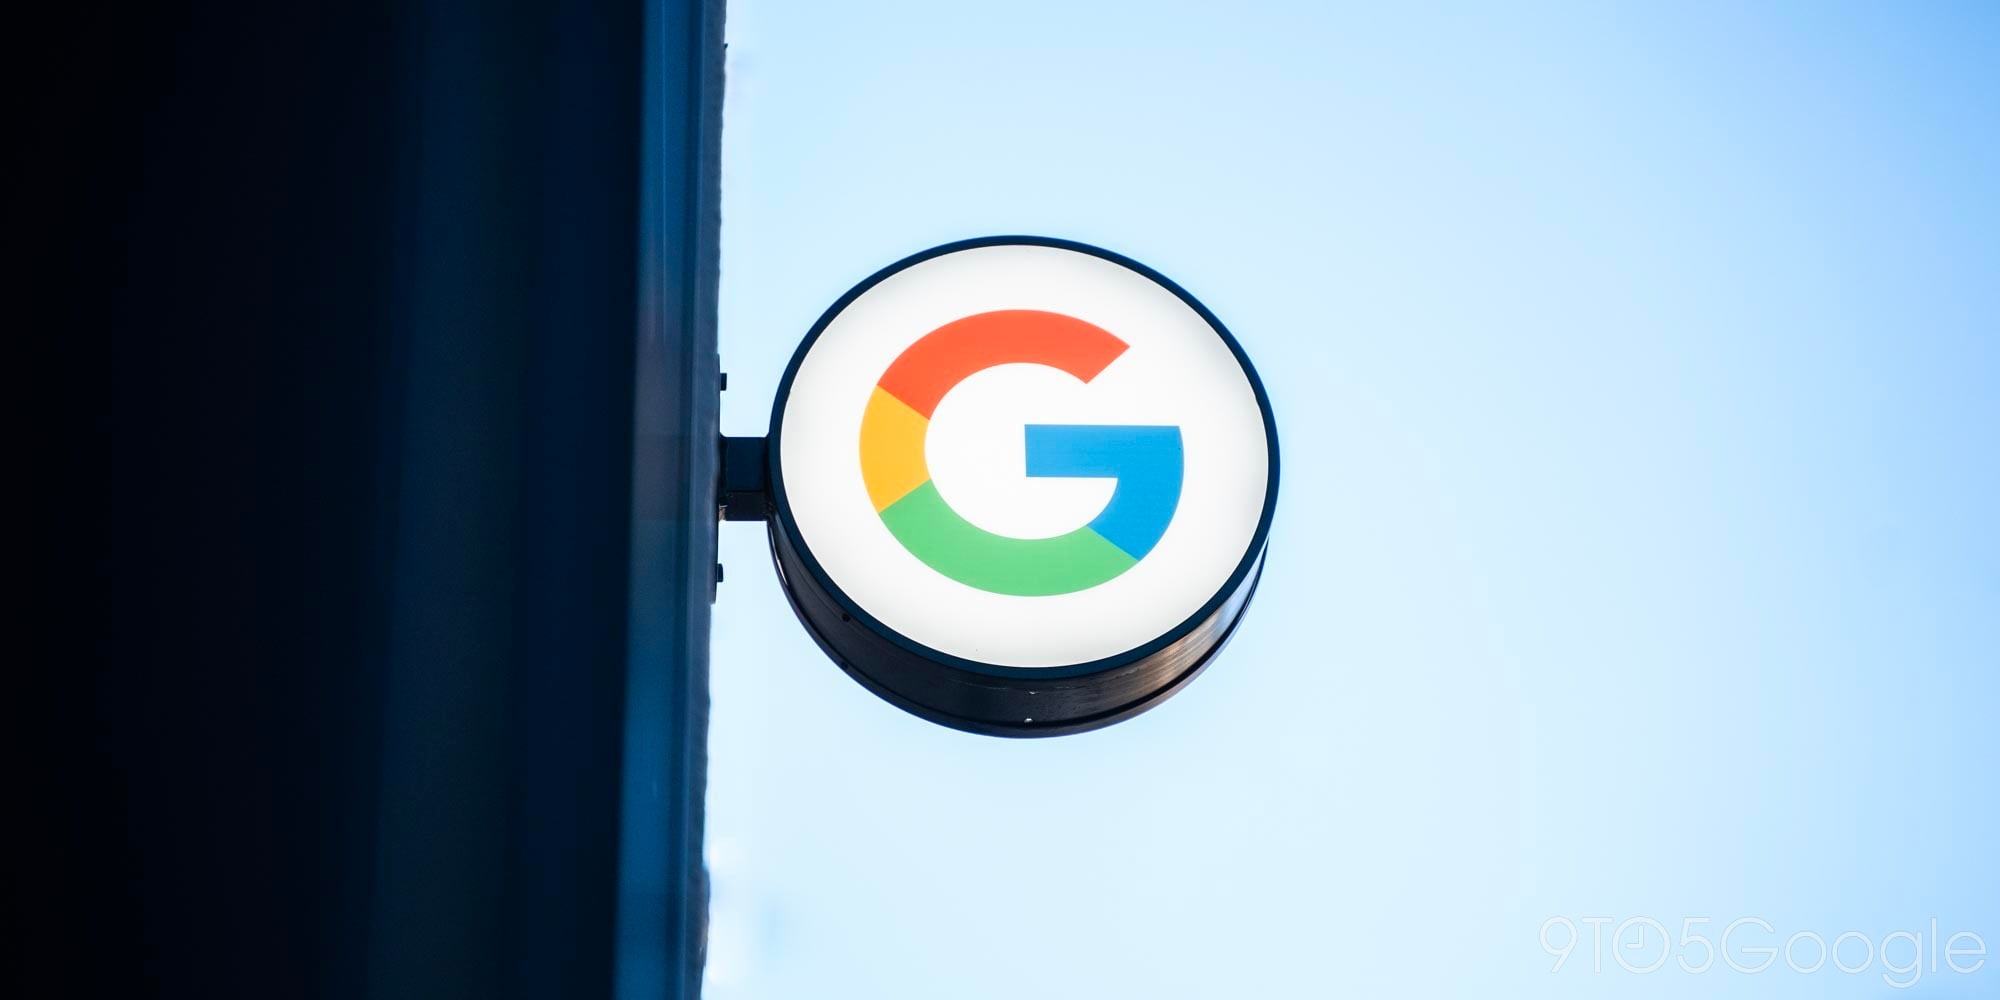 Google, lai piesaistītu uzņēmumu pircējus, izlaida programmu Pixel for Business